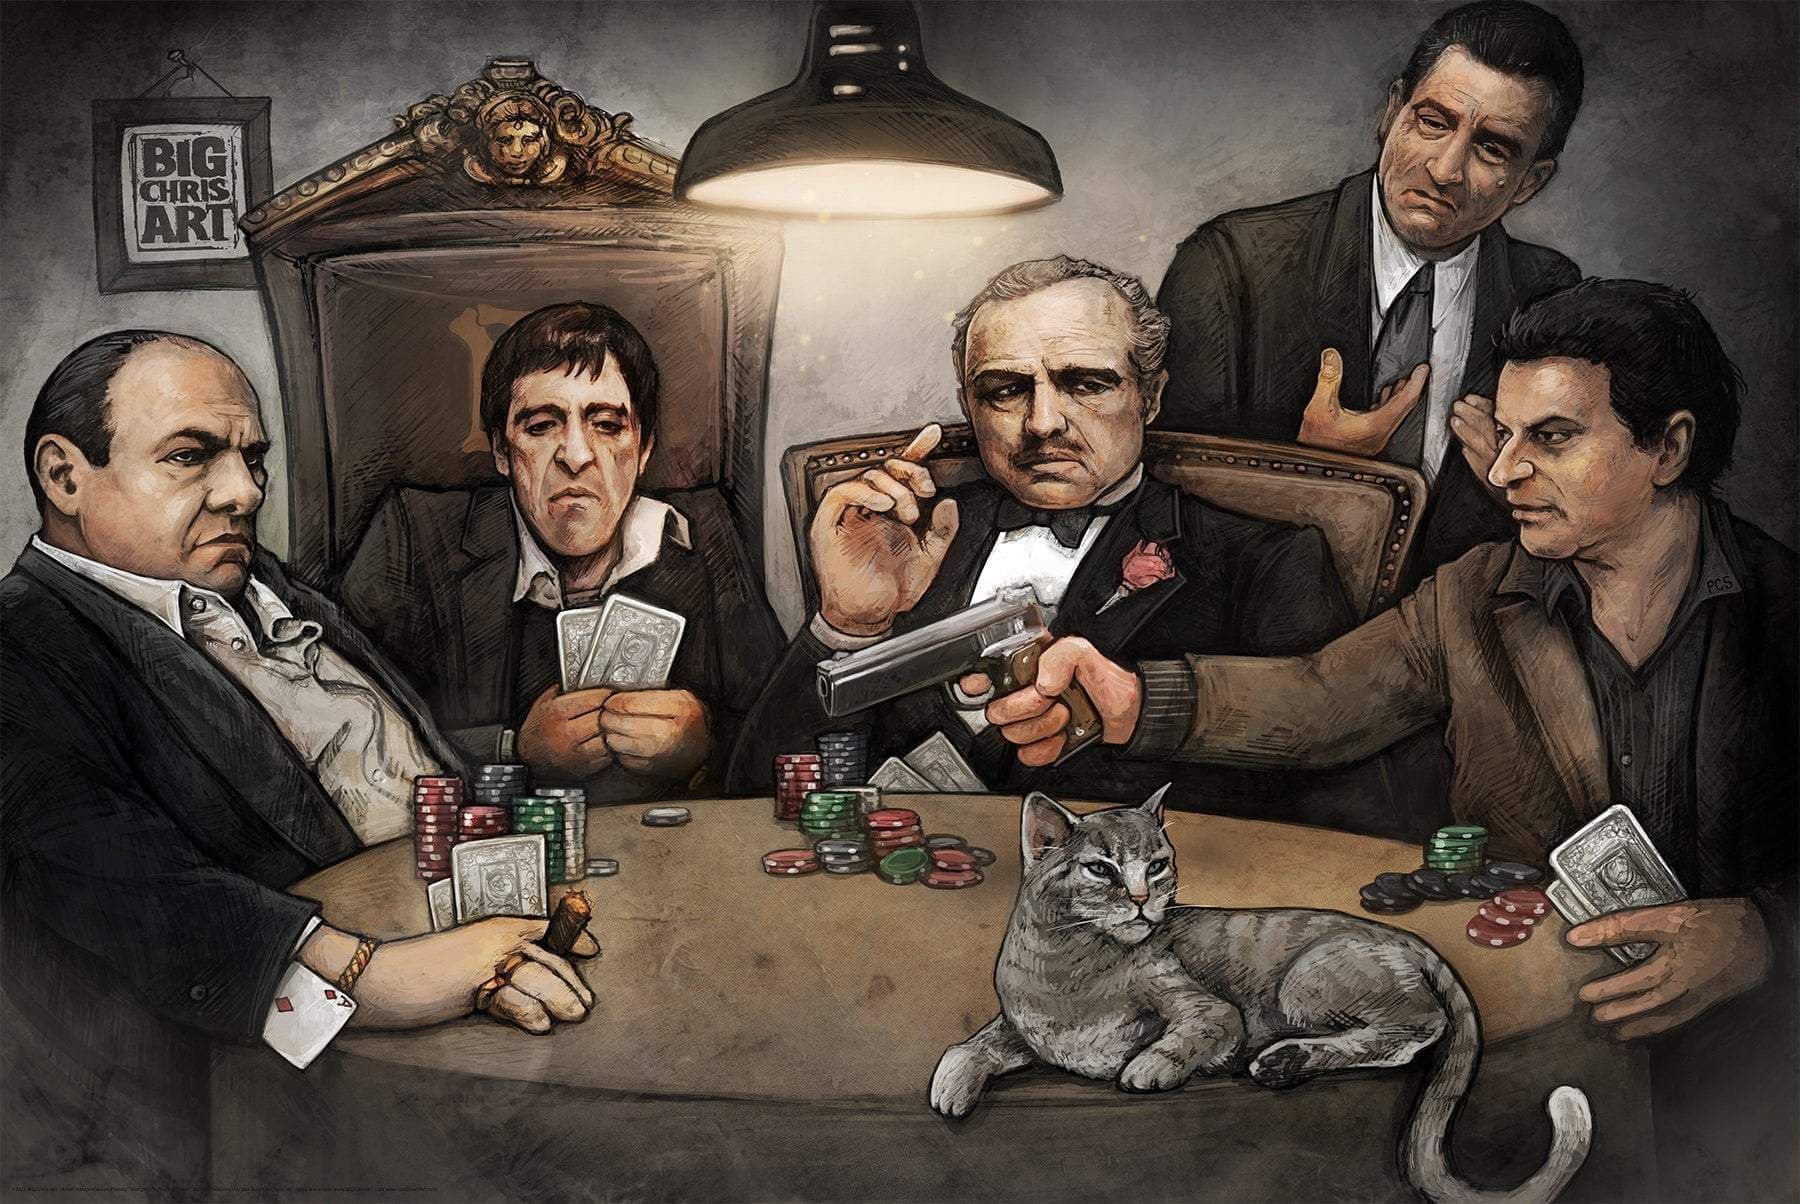 mafia poker